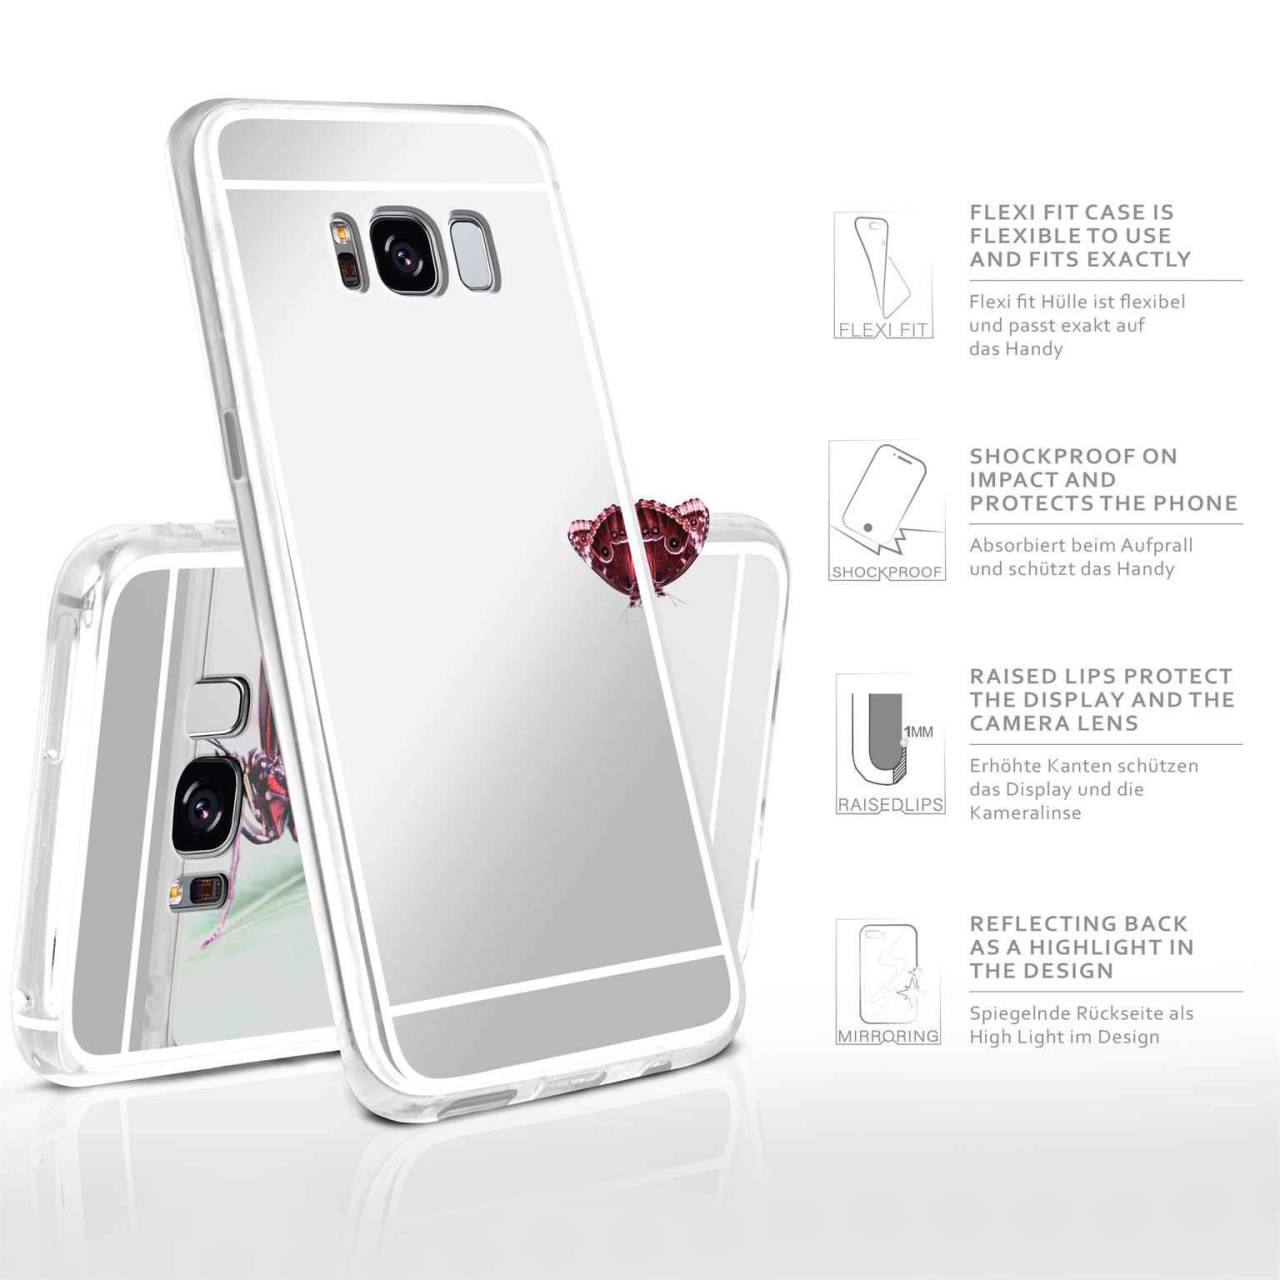 moex Mirror Case für Samsung Galaxy S8 Plus – Handyhülle aus Silikon mit Spiegel auf der Rückseite